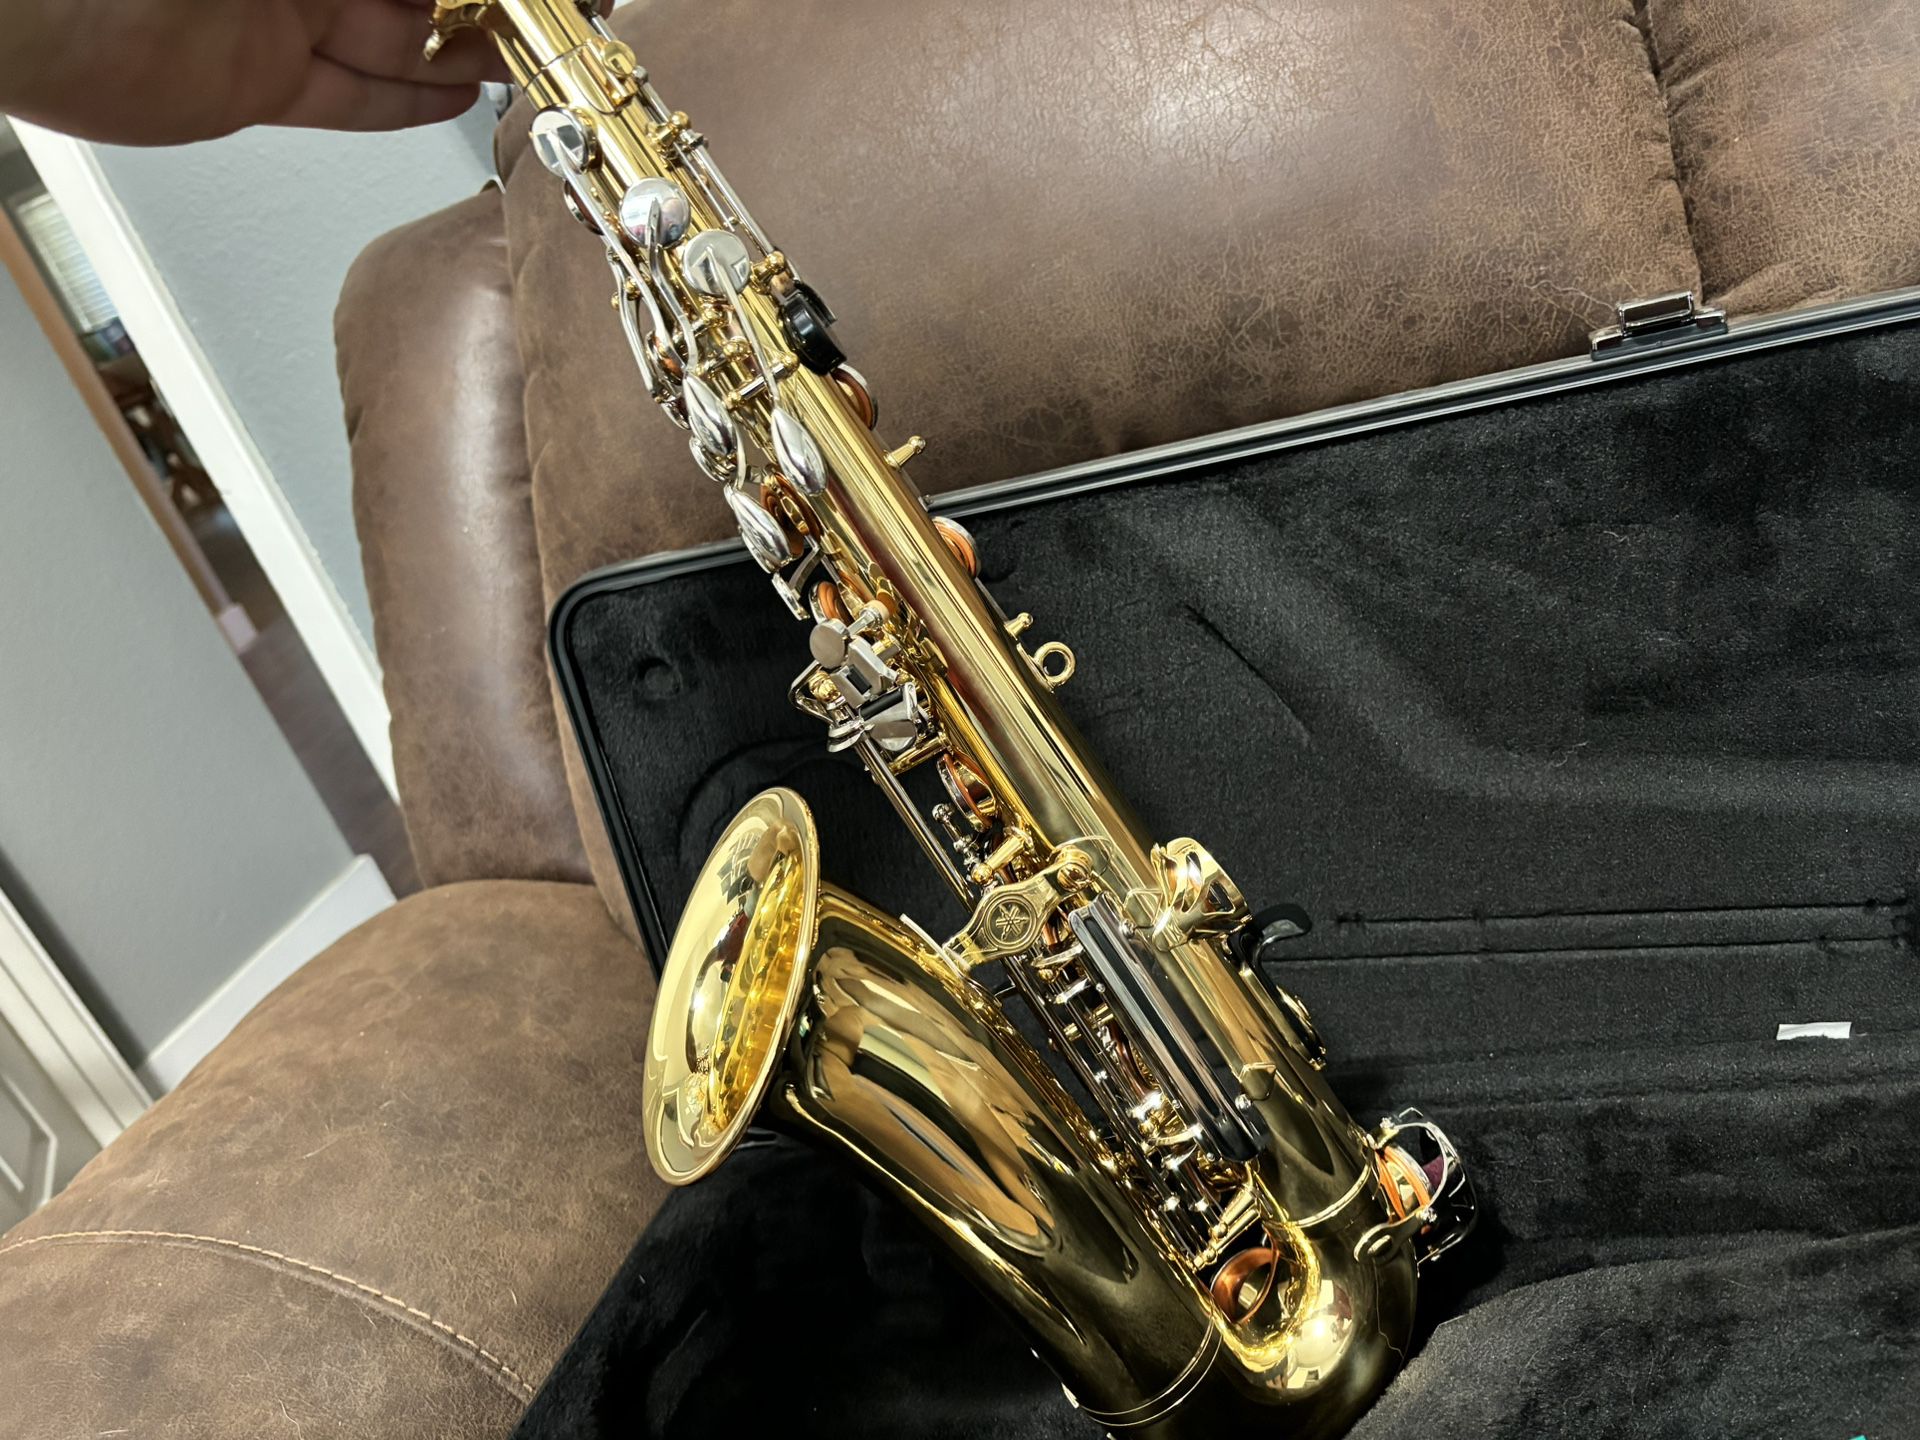 Yamaha YAS-200ADII Alto Saxophone